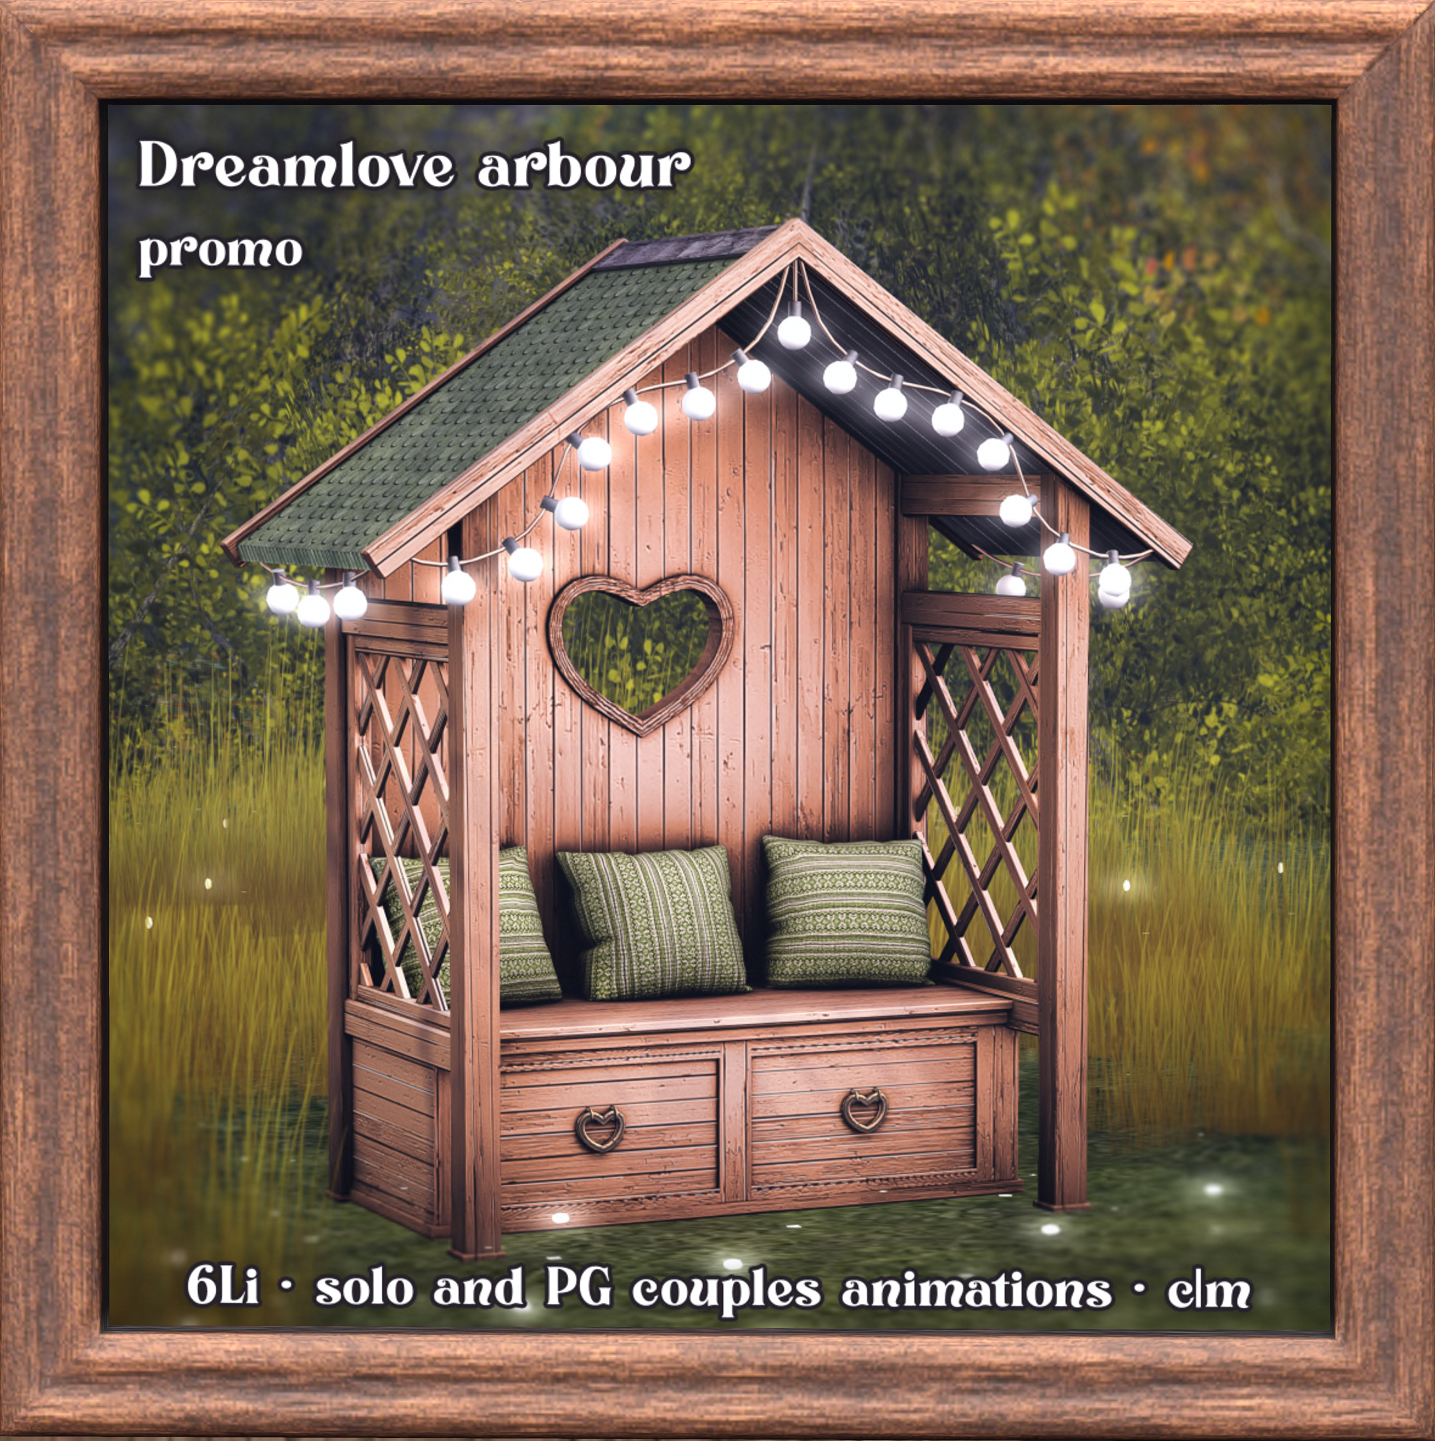 Raindale – Dreamlove Arbour